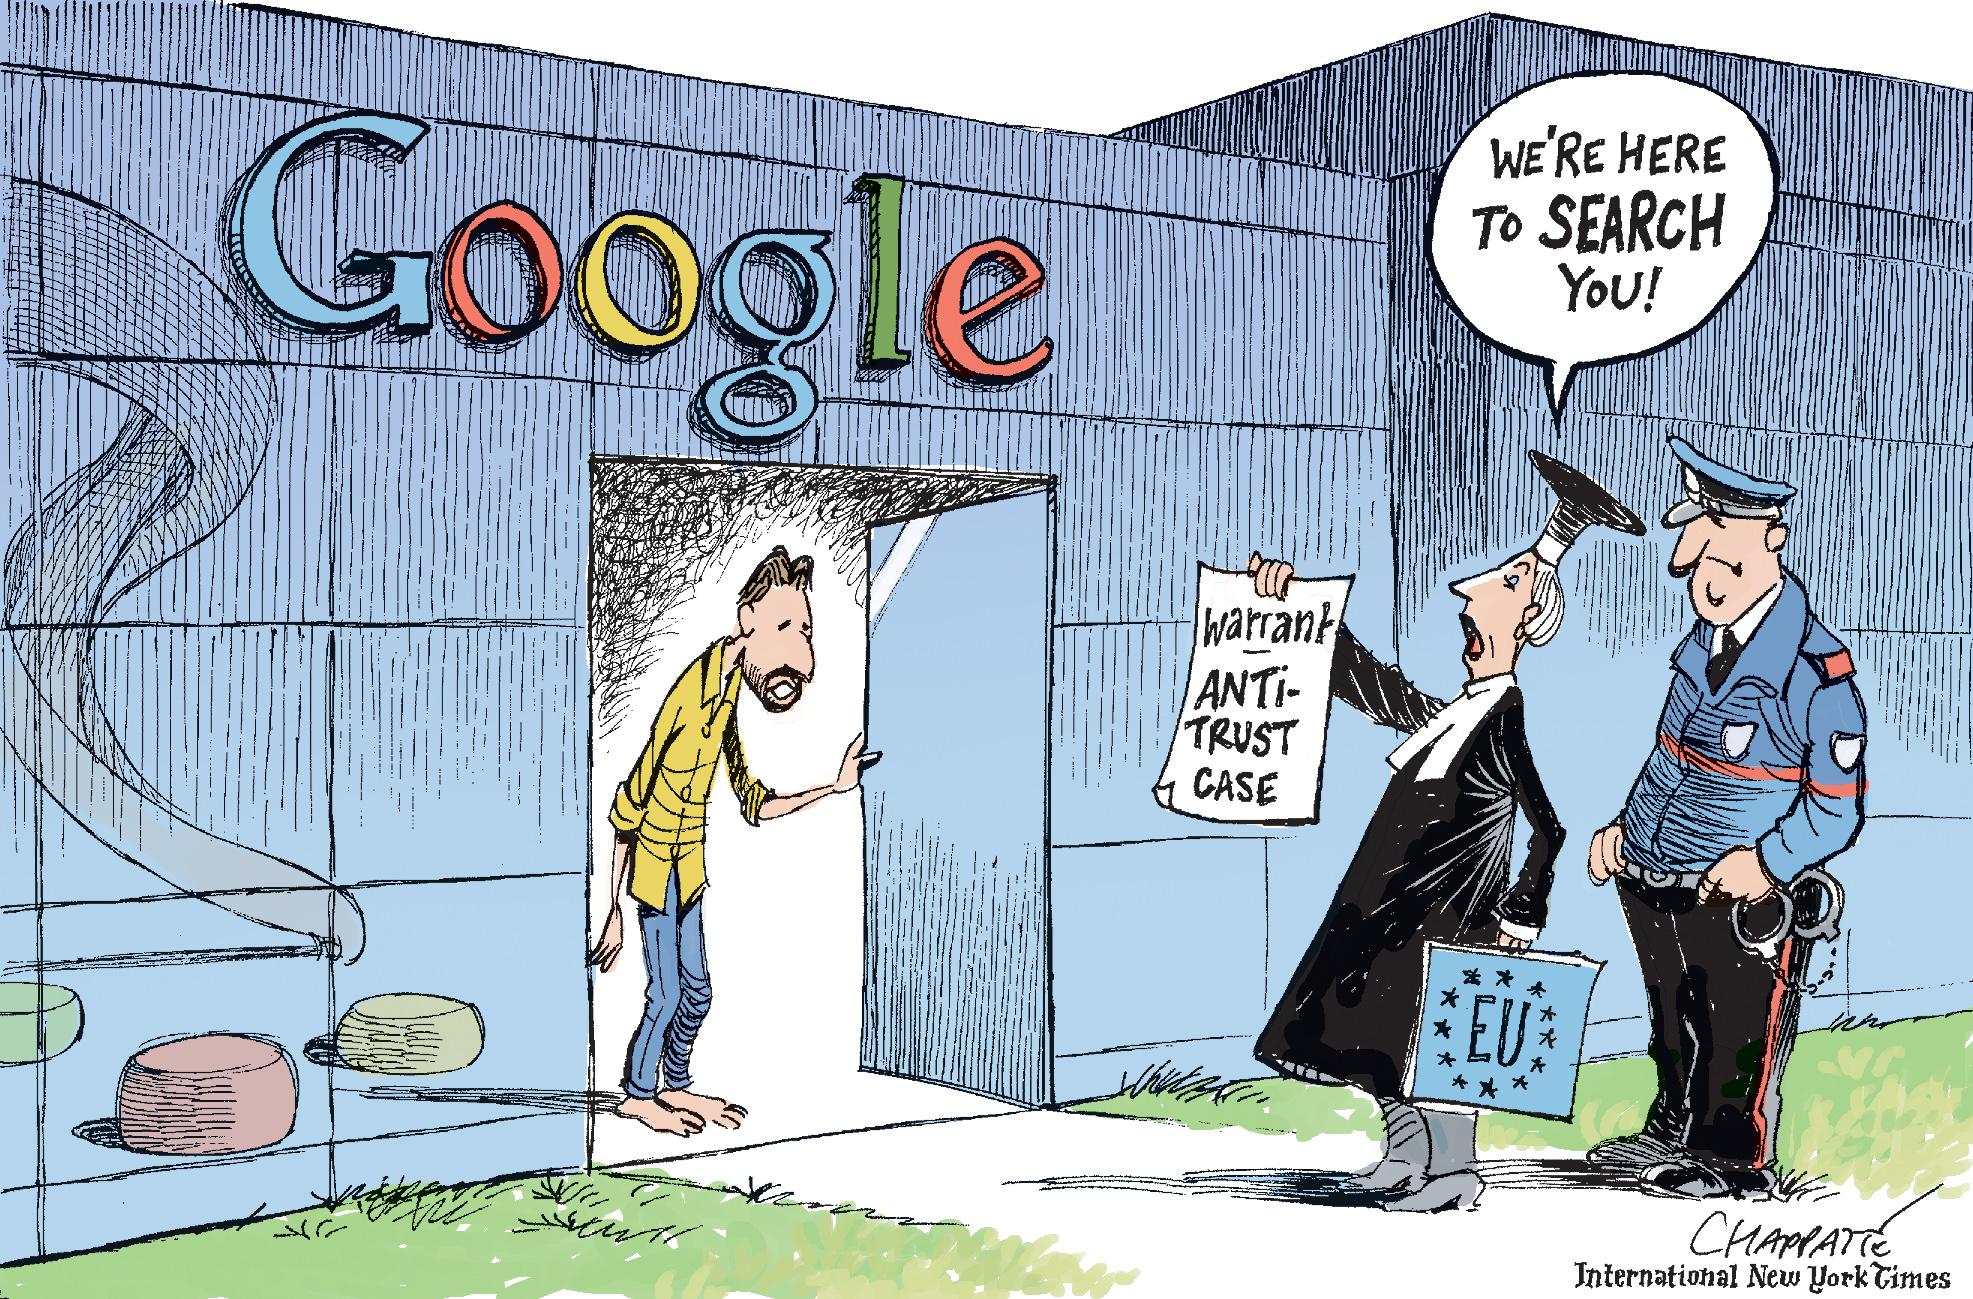 European Union vs Google